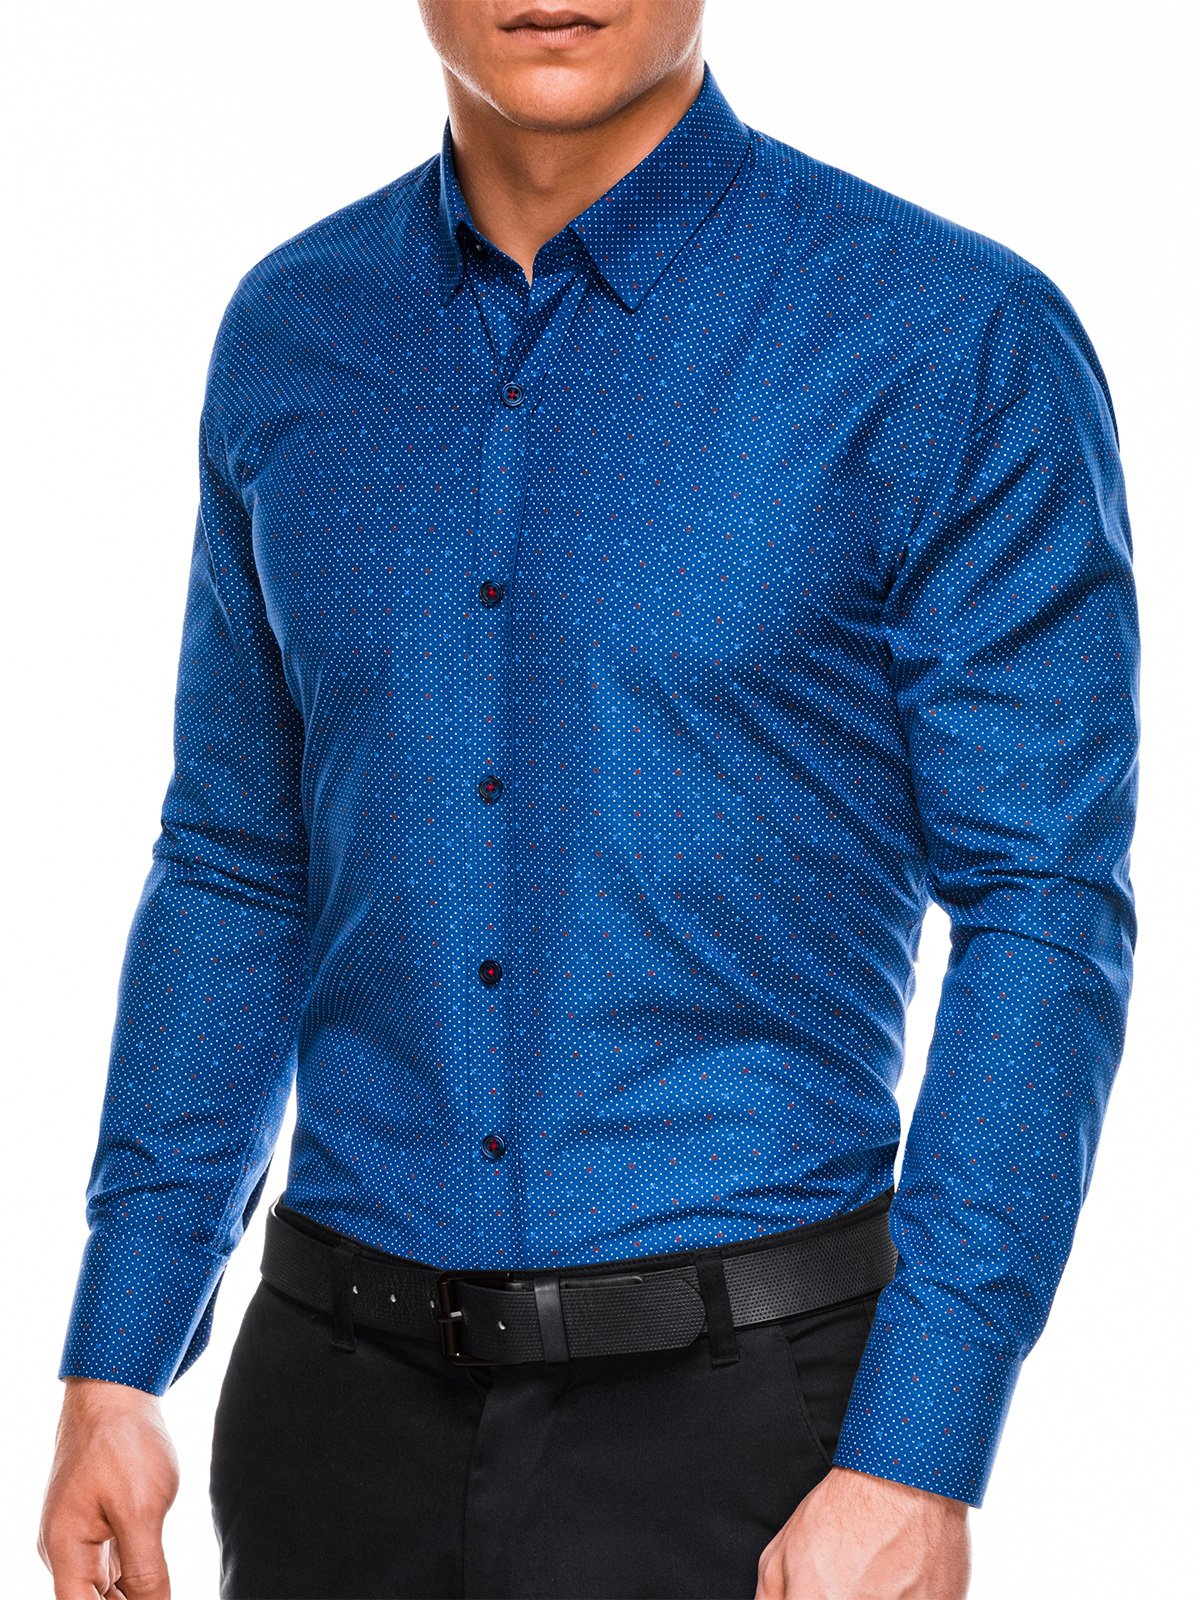 Men's elegant shirt with long sleeves - light navy/white K470 | MODONE ...